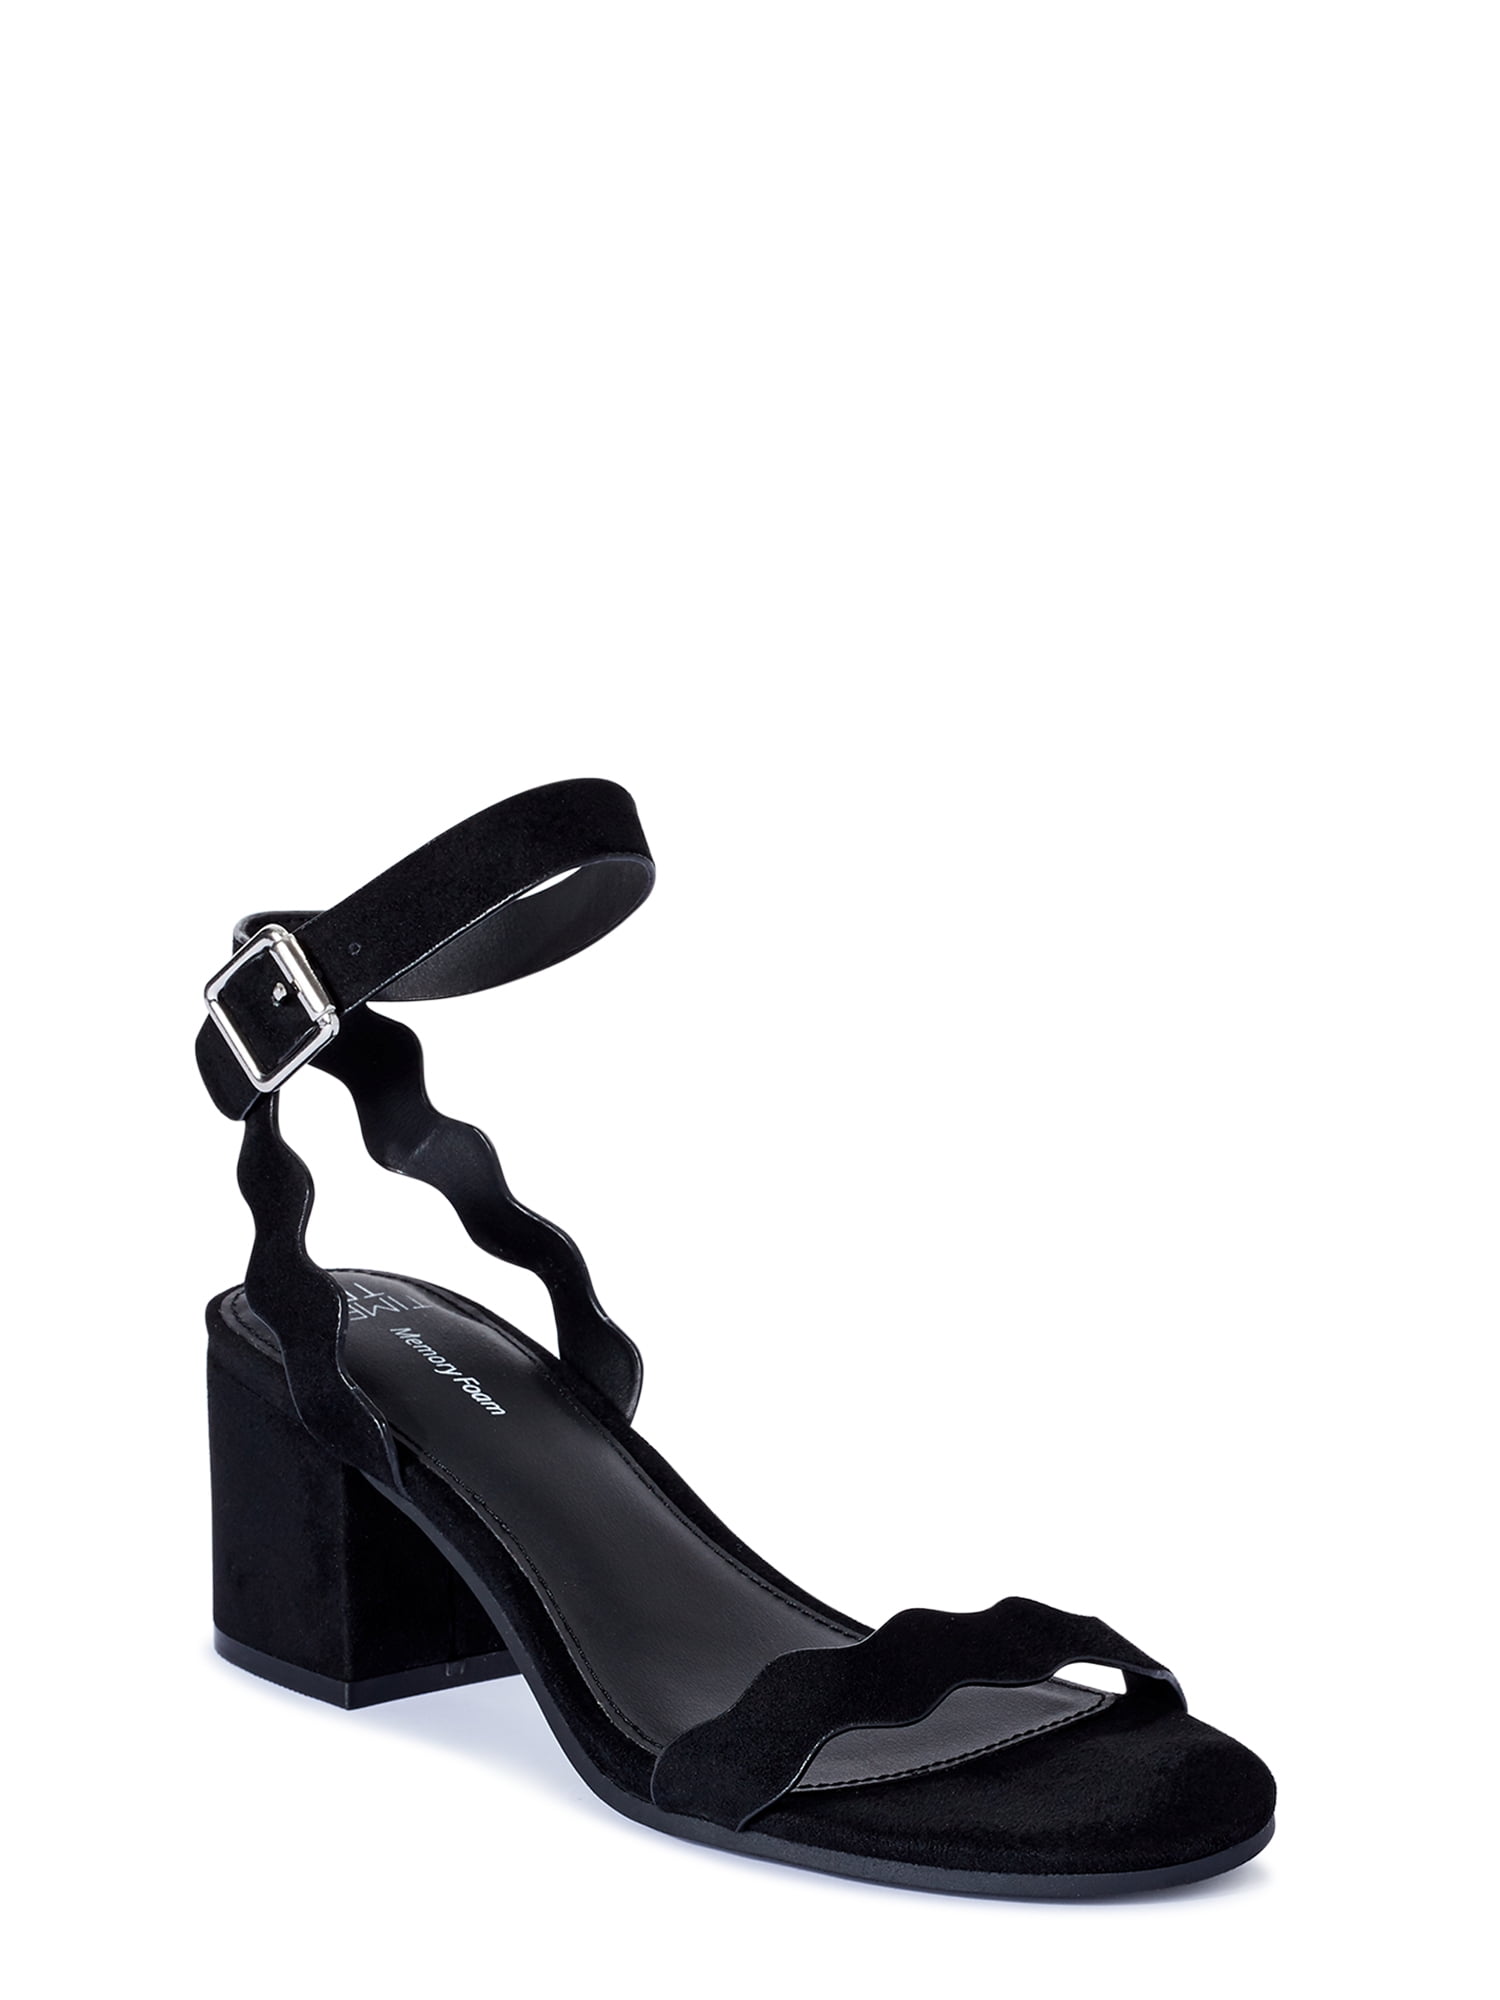 Time and Tru Women's Scalloped Block Heel Sandals - Walmart.com